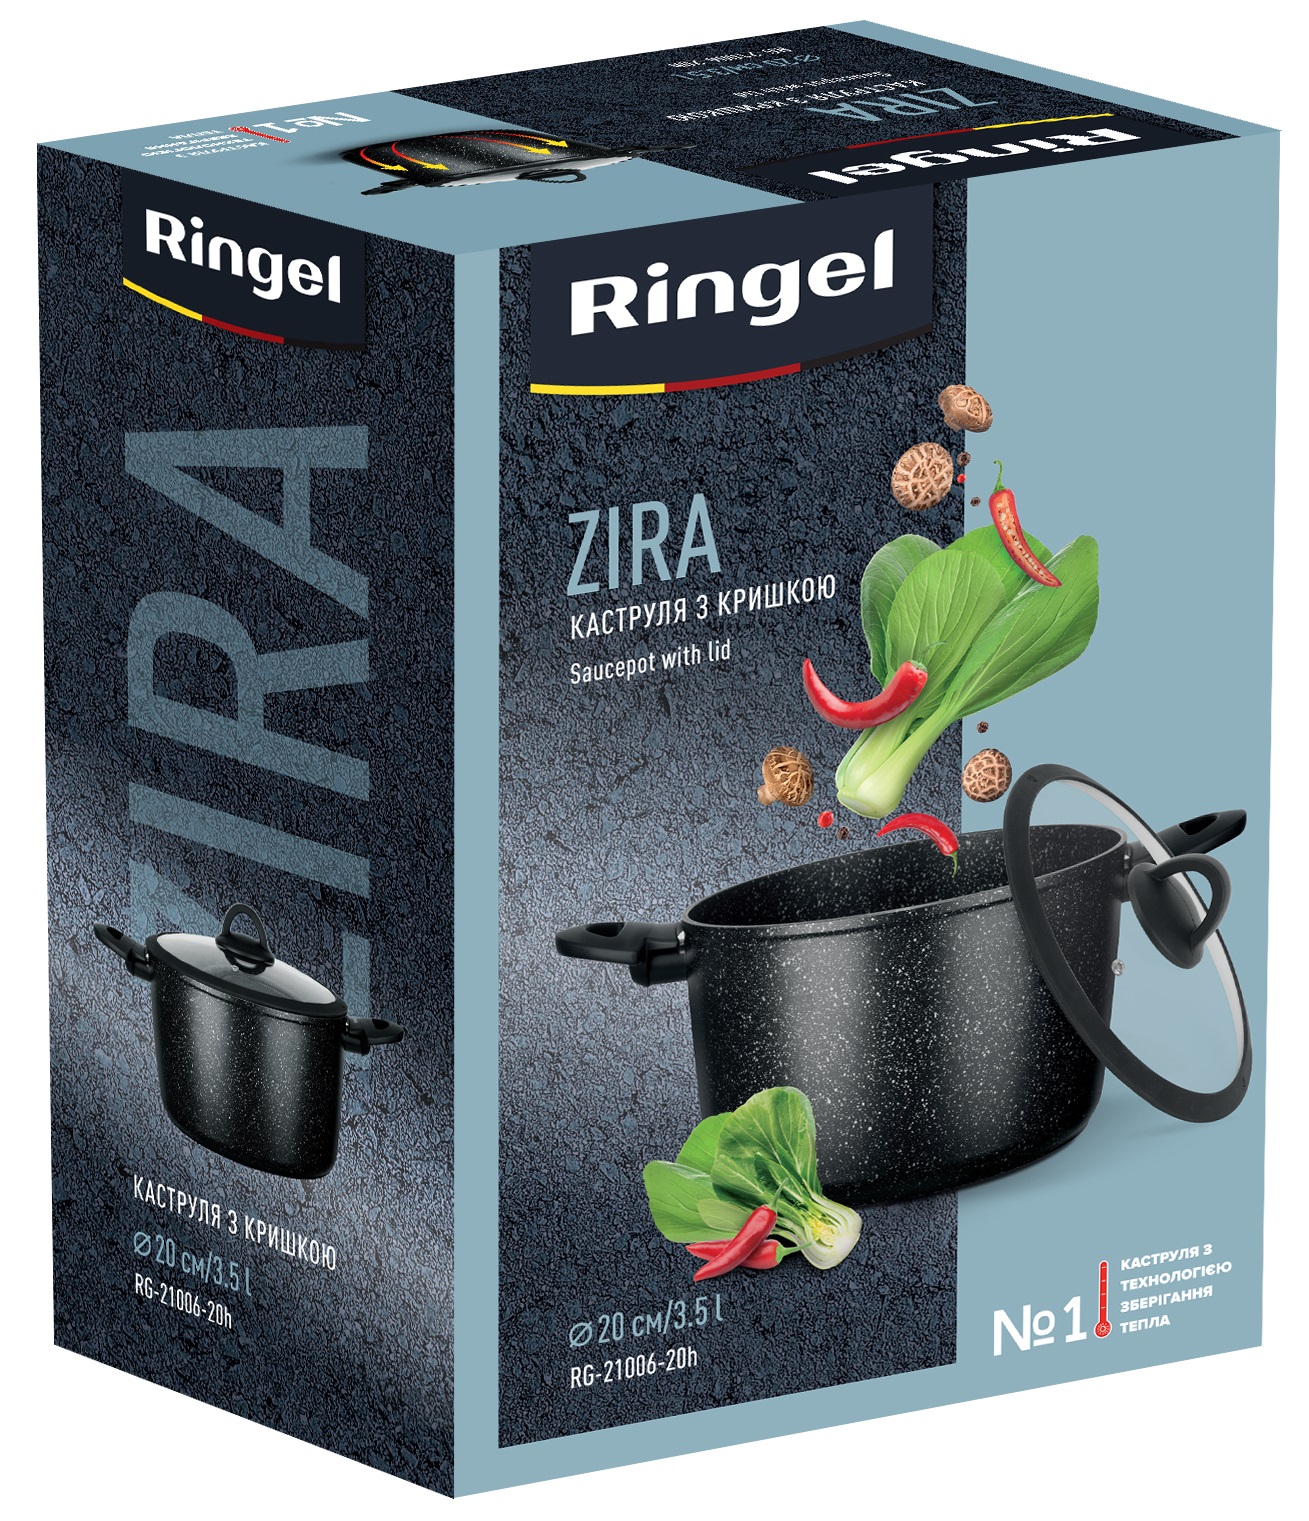 Кастрюля RINGEL RG-21006-20h Zira 3.5 л, недорого